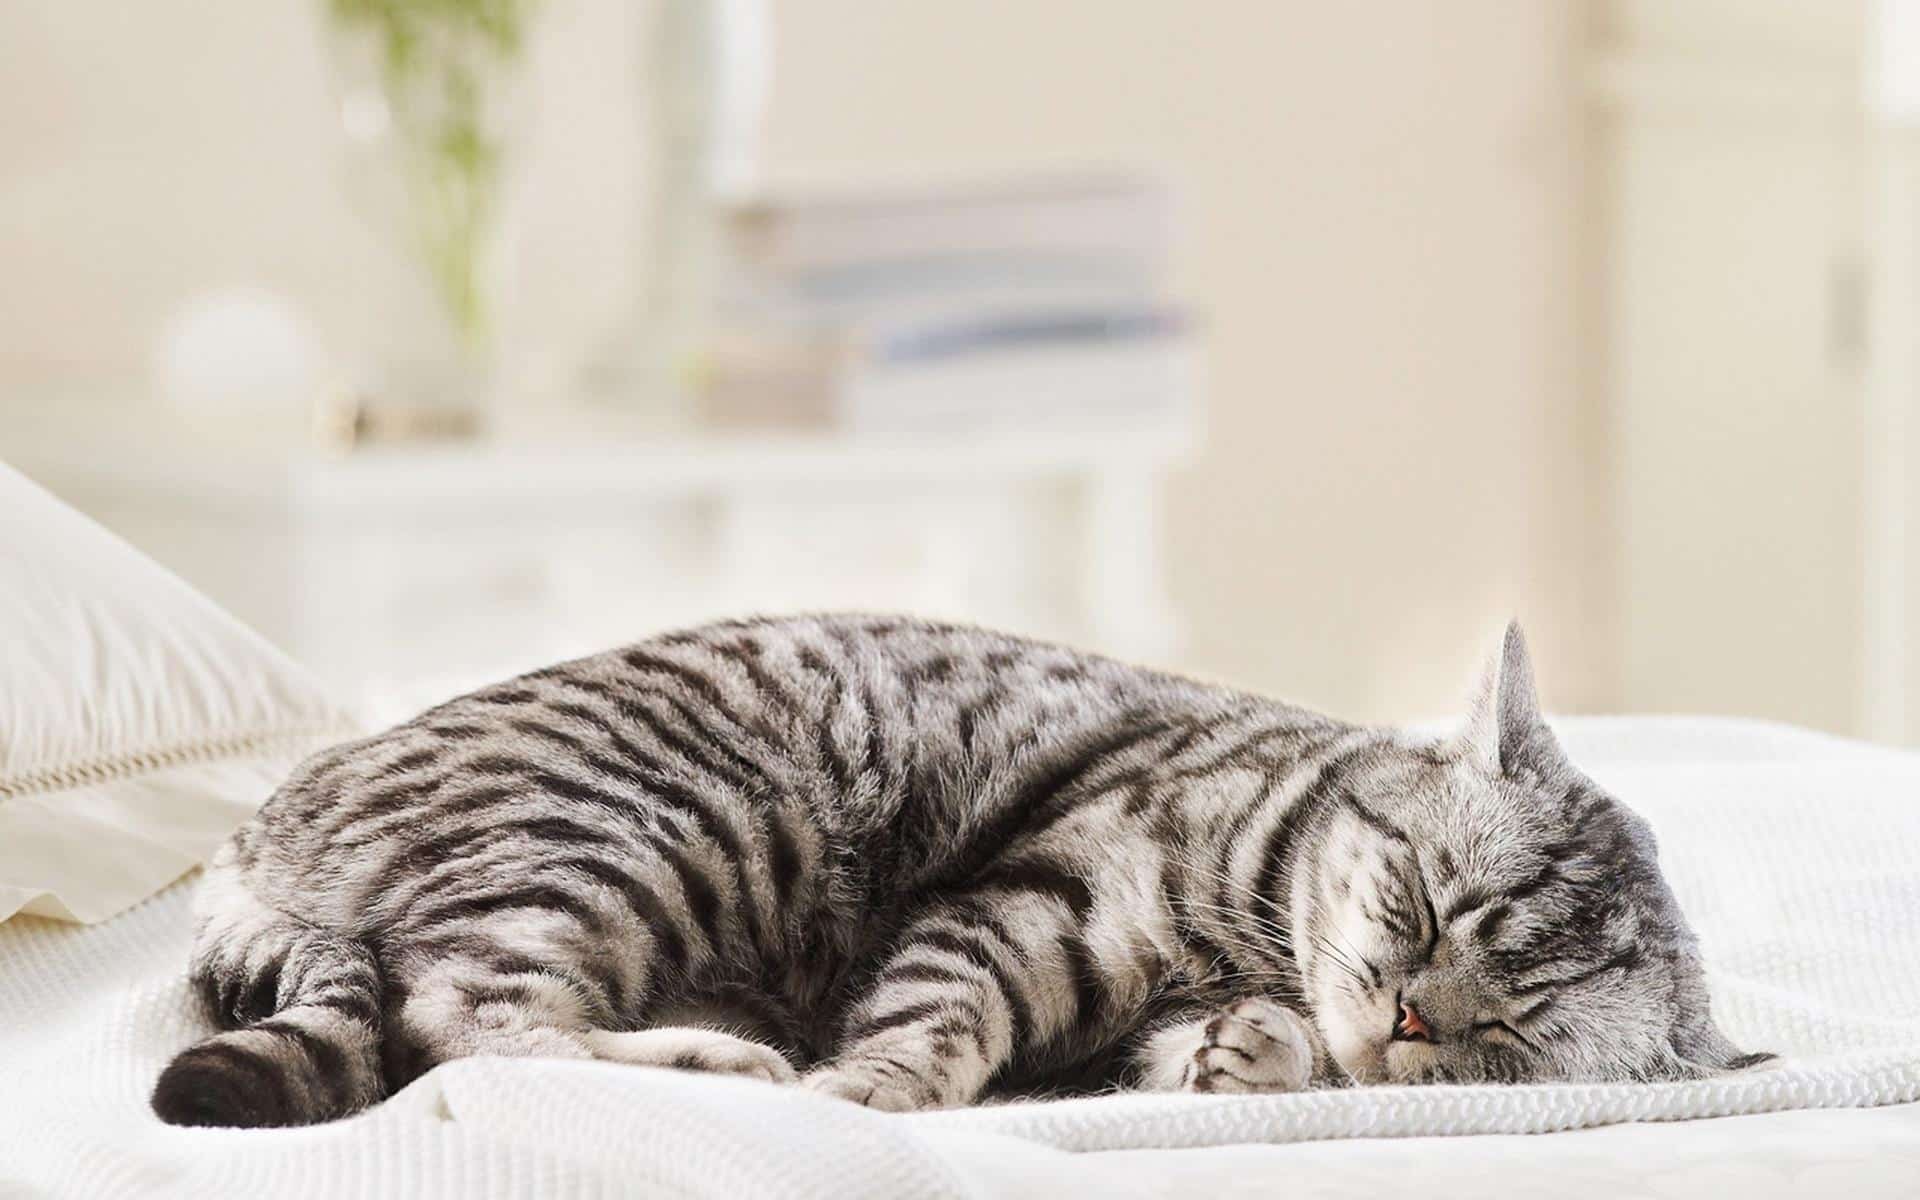 Nhiệt độ cơ thể tăng cao là dấu hiệu khiến mèo bị ốm